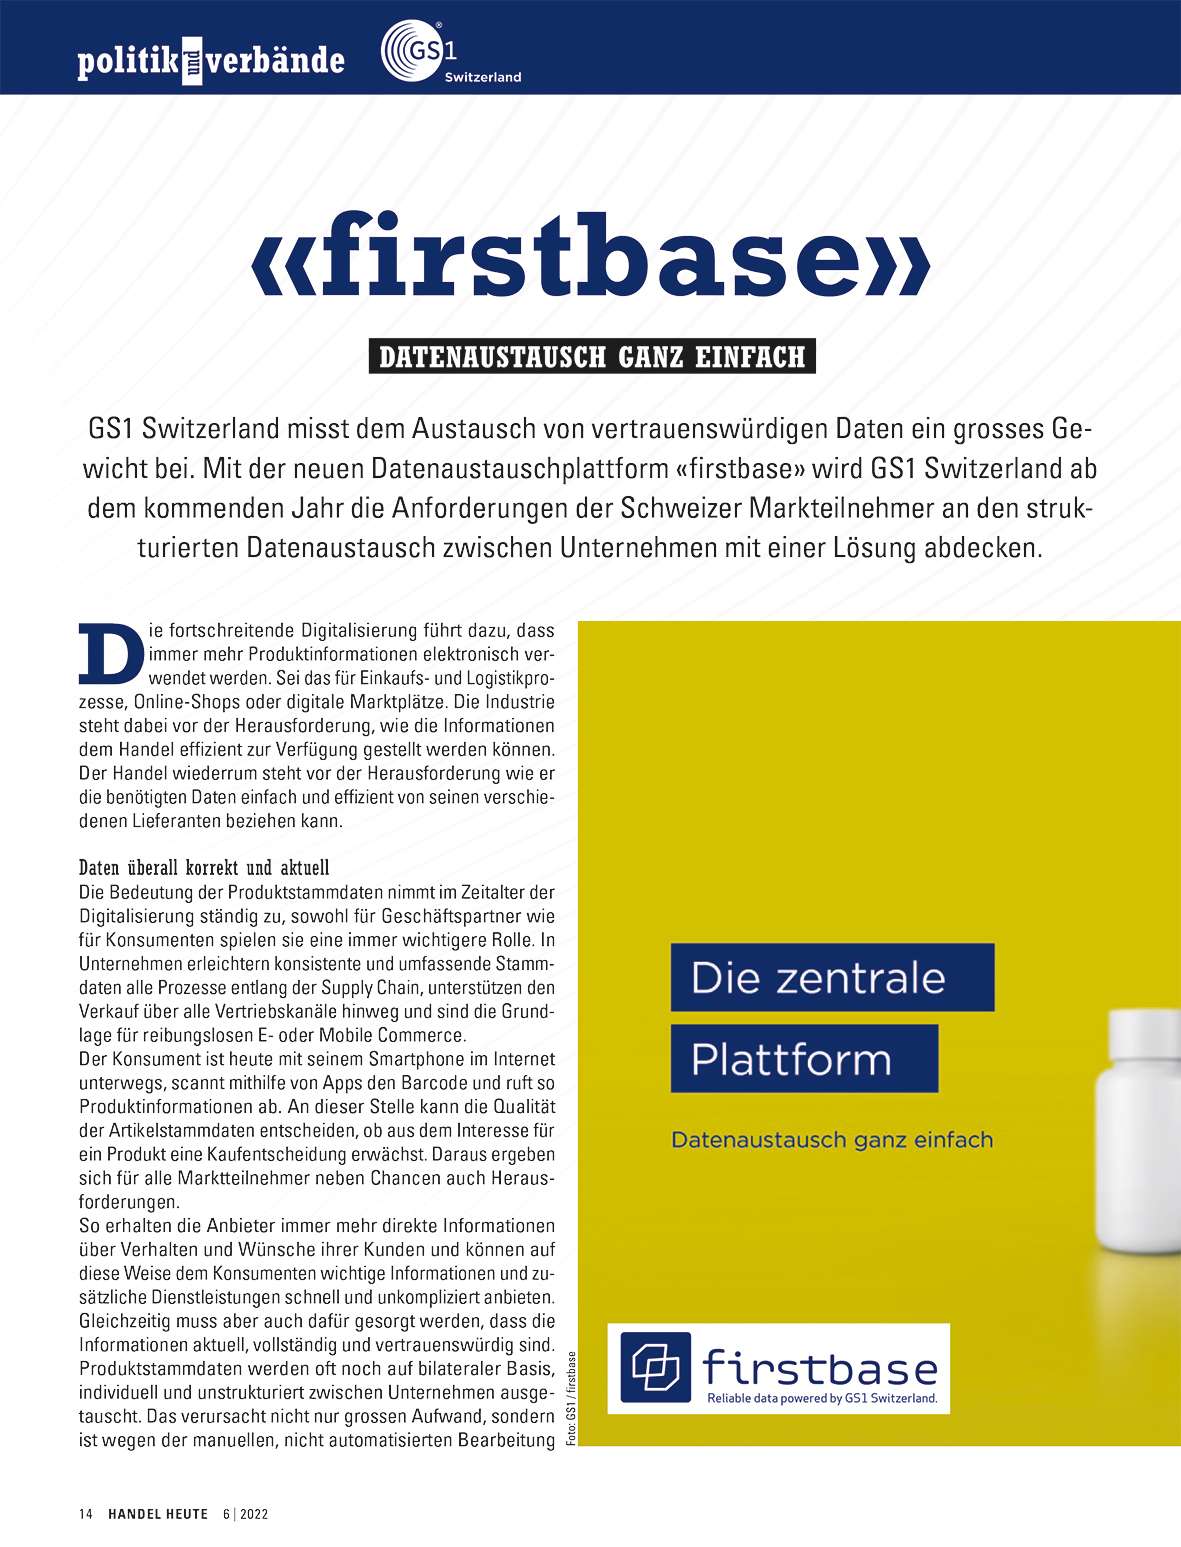 Neue Datenaustauschplattform «firstbase» der GS1 Switzerland